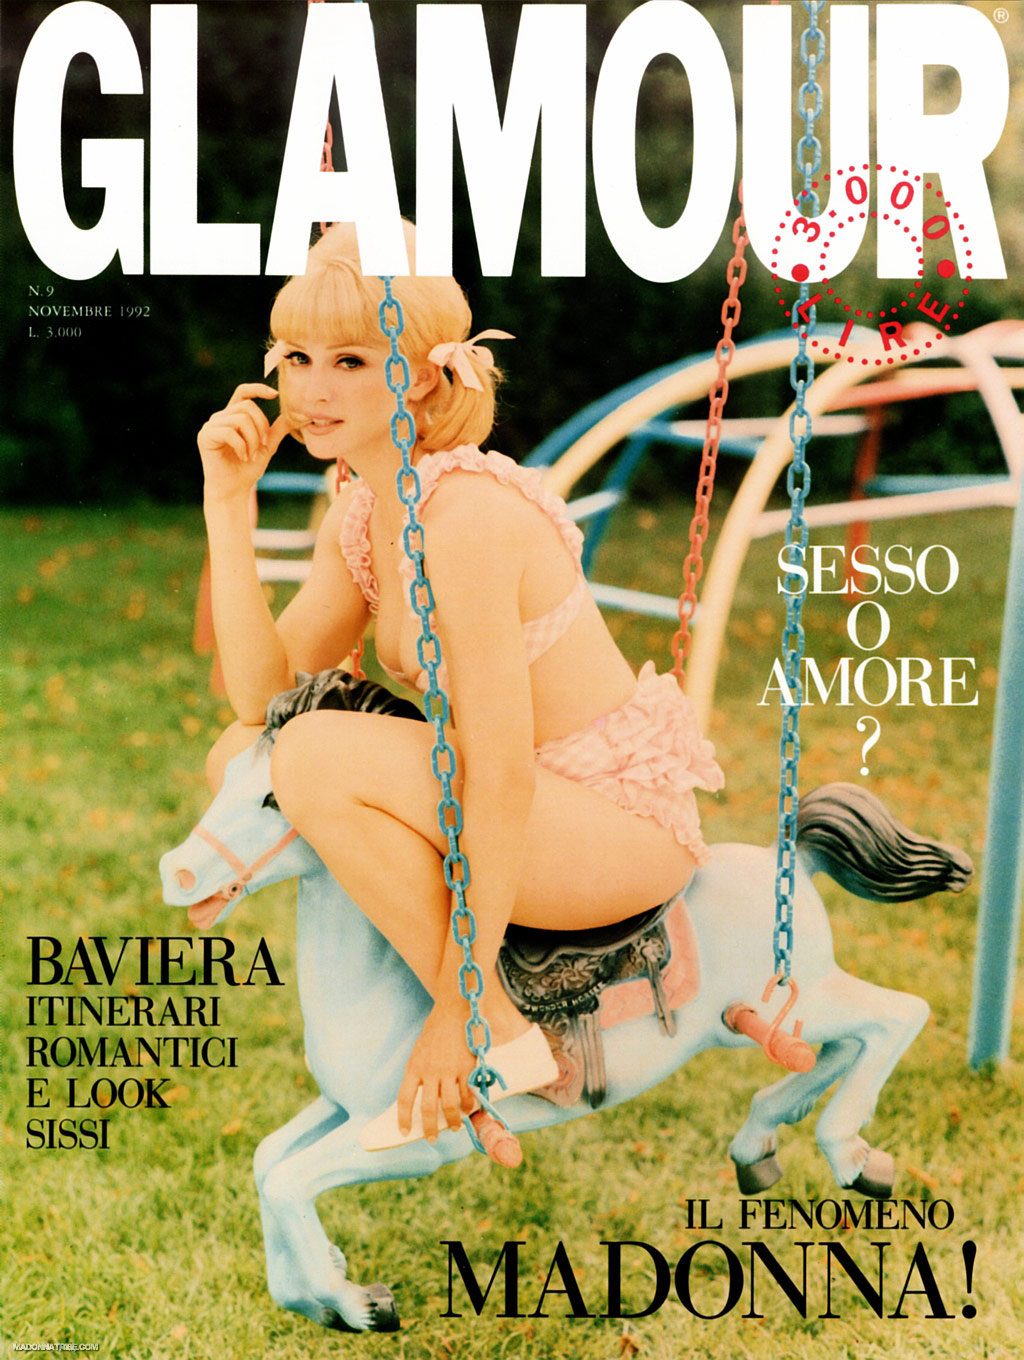 http://4.bp.blogspot.com/_bq6_cE4BJJQ/S-Vtq3a91qI/AAAAAAAAYK0/sKvZkLQZoqw/s1600/Steven+Meisel+%C3%97+Madonna+-+GLAMOUR+Italia+1992+-+cover.jpg